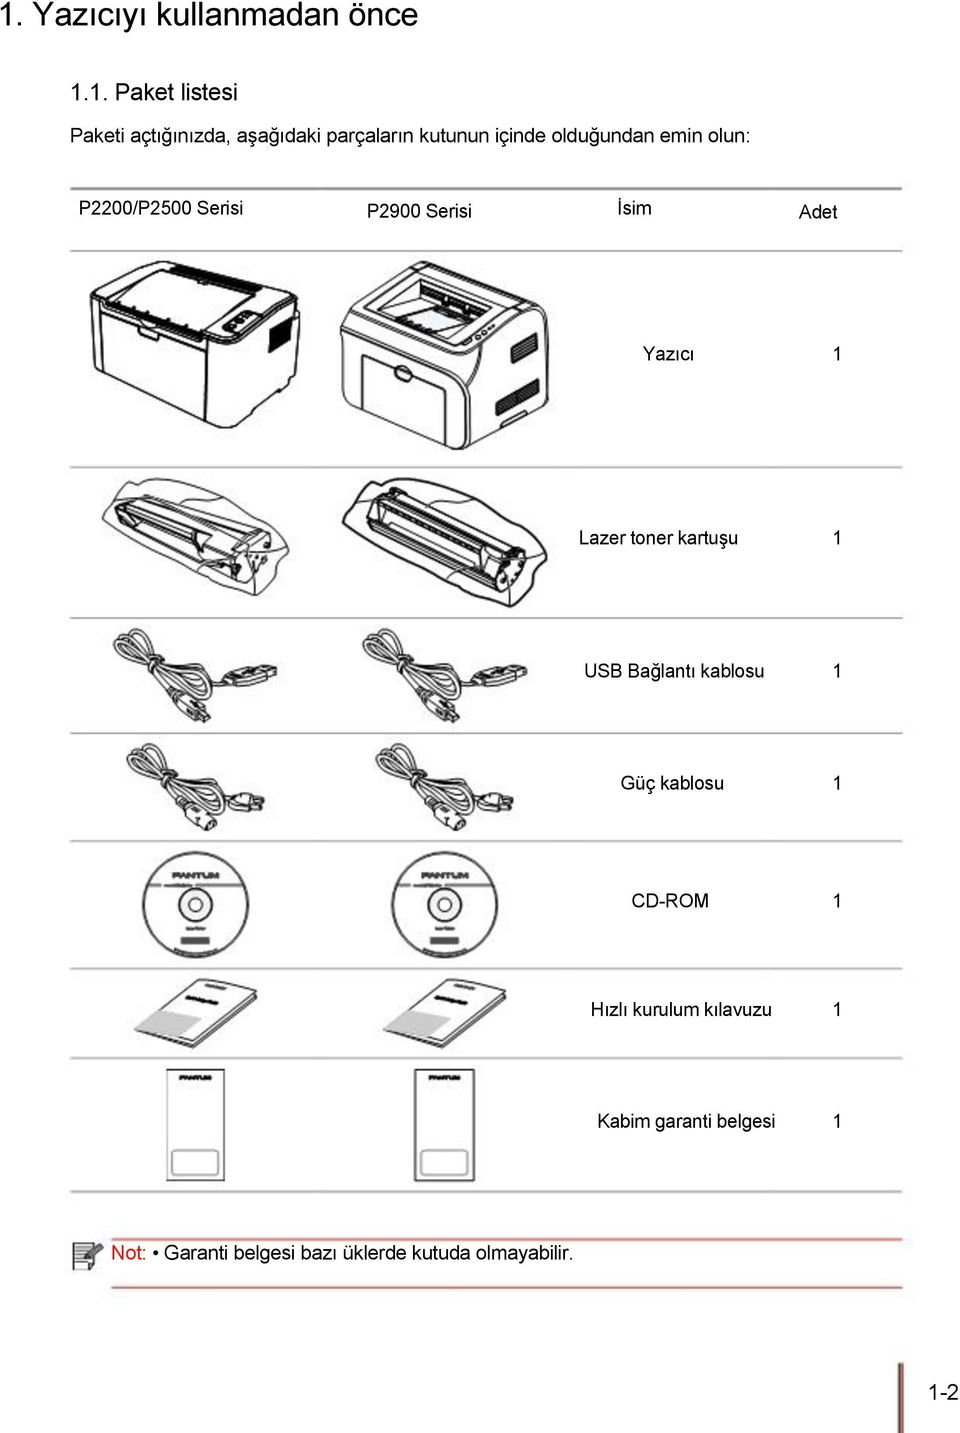 Adet Yazıcı 1 Lazer toner kartuşu 1 USB Bağlantı kablosu 1 Güç kablosu 1 CD-ROM 1 Hızlı